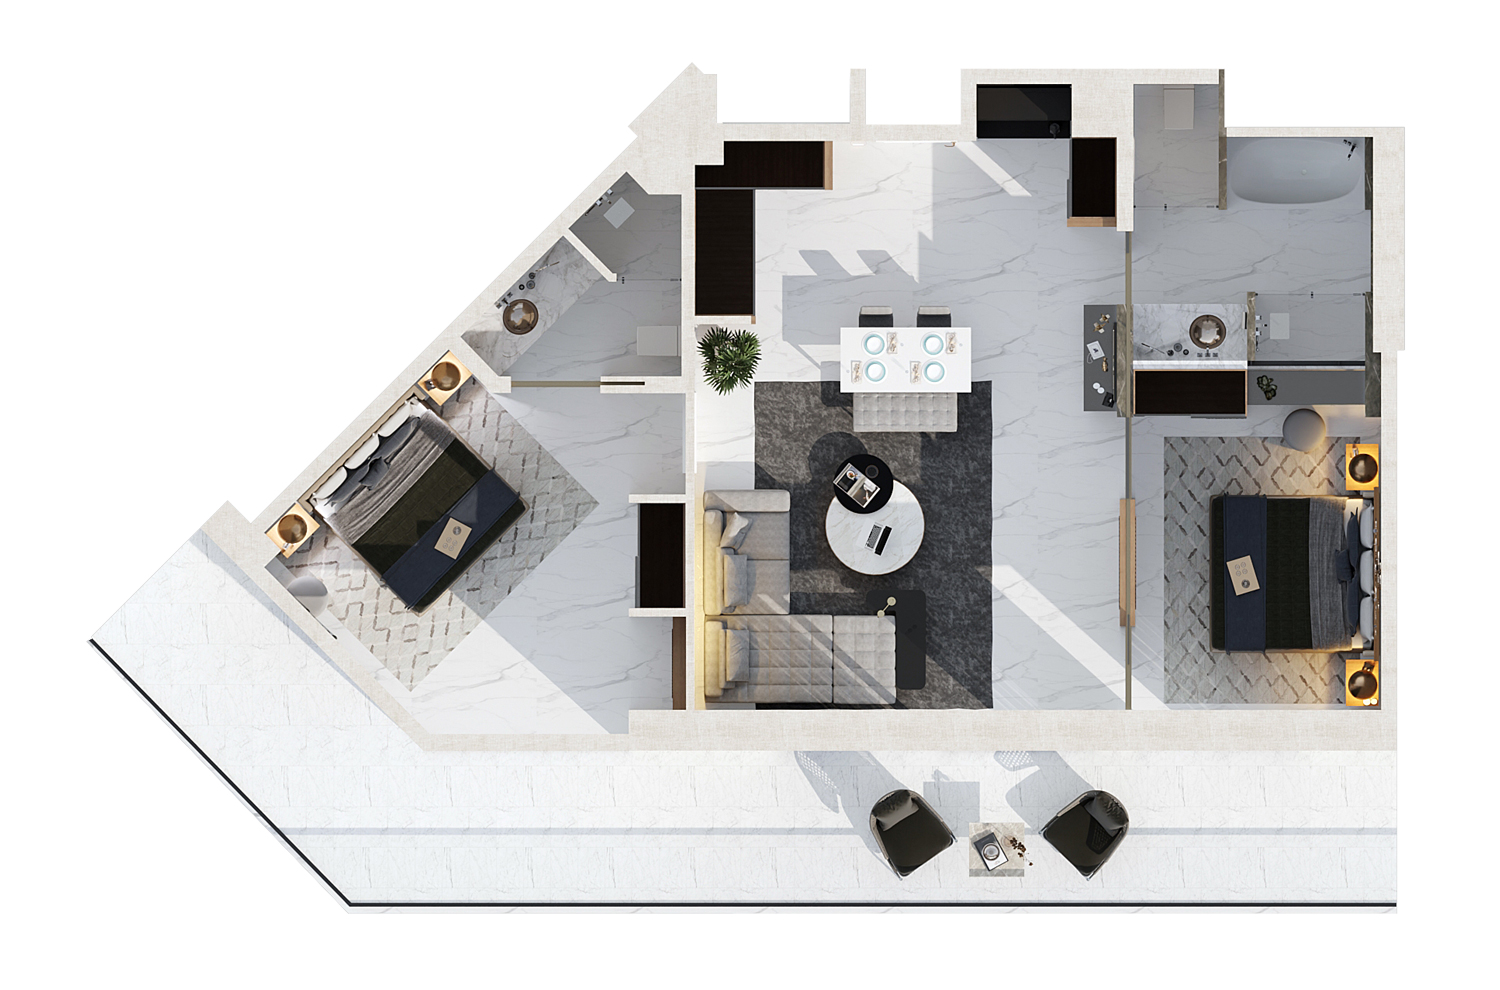 Floor Plan - 2 bedroom apartment / Block A